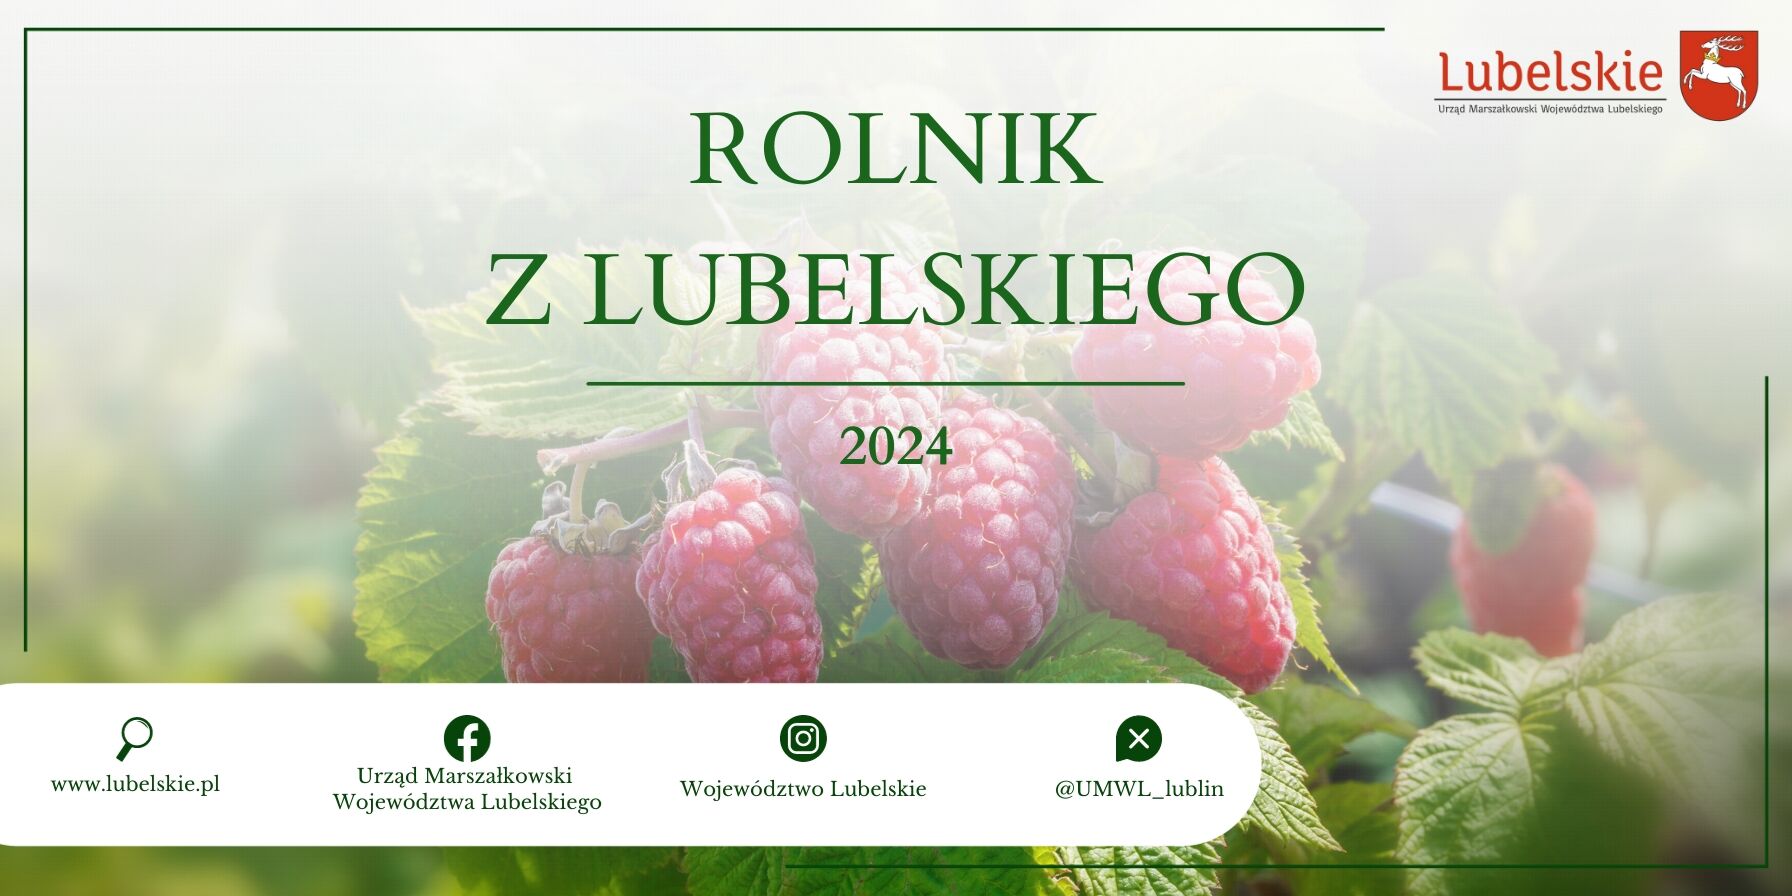 Zdjęcie reklamowe przedstawiające maliny z napisem "Rolnik z Lubelskiego 2024", oraz logotypy i adresy instytucji związanych z Lubelskiem na zielonym, rolniczym tle.